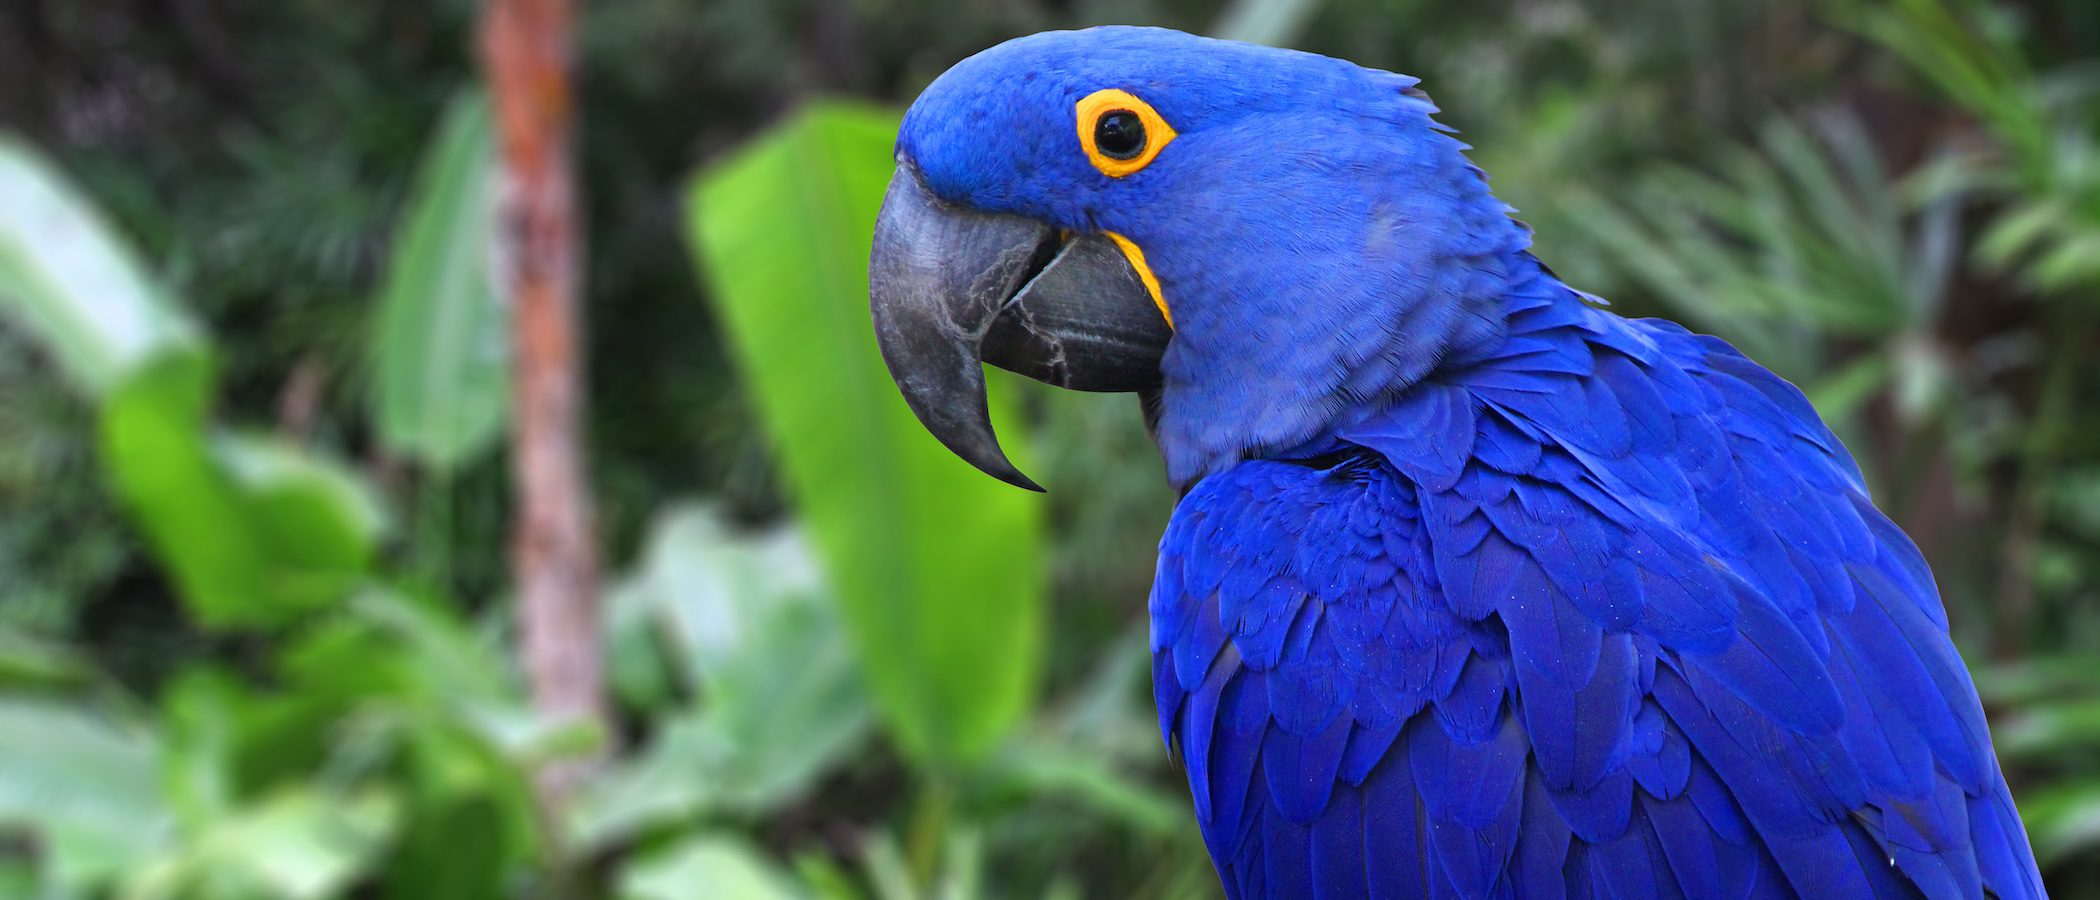 Todo sobre el Guacamayo Jacinto, un ave fascinante